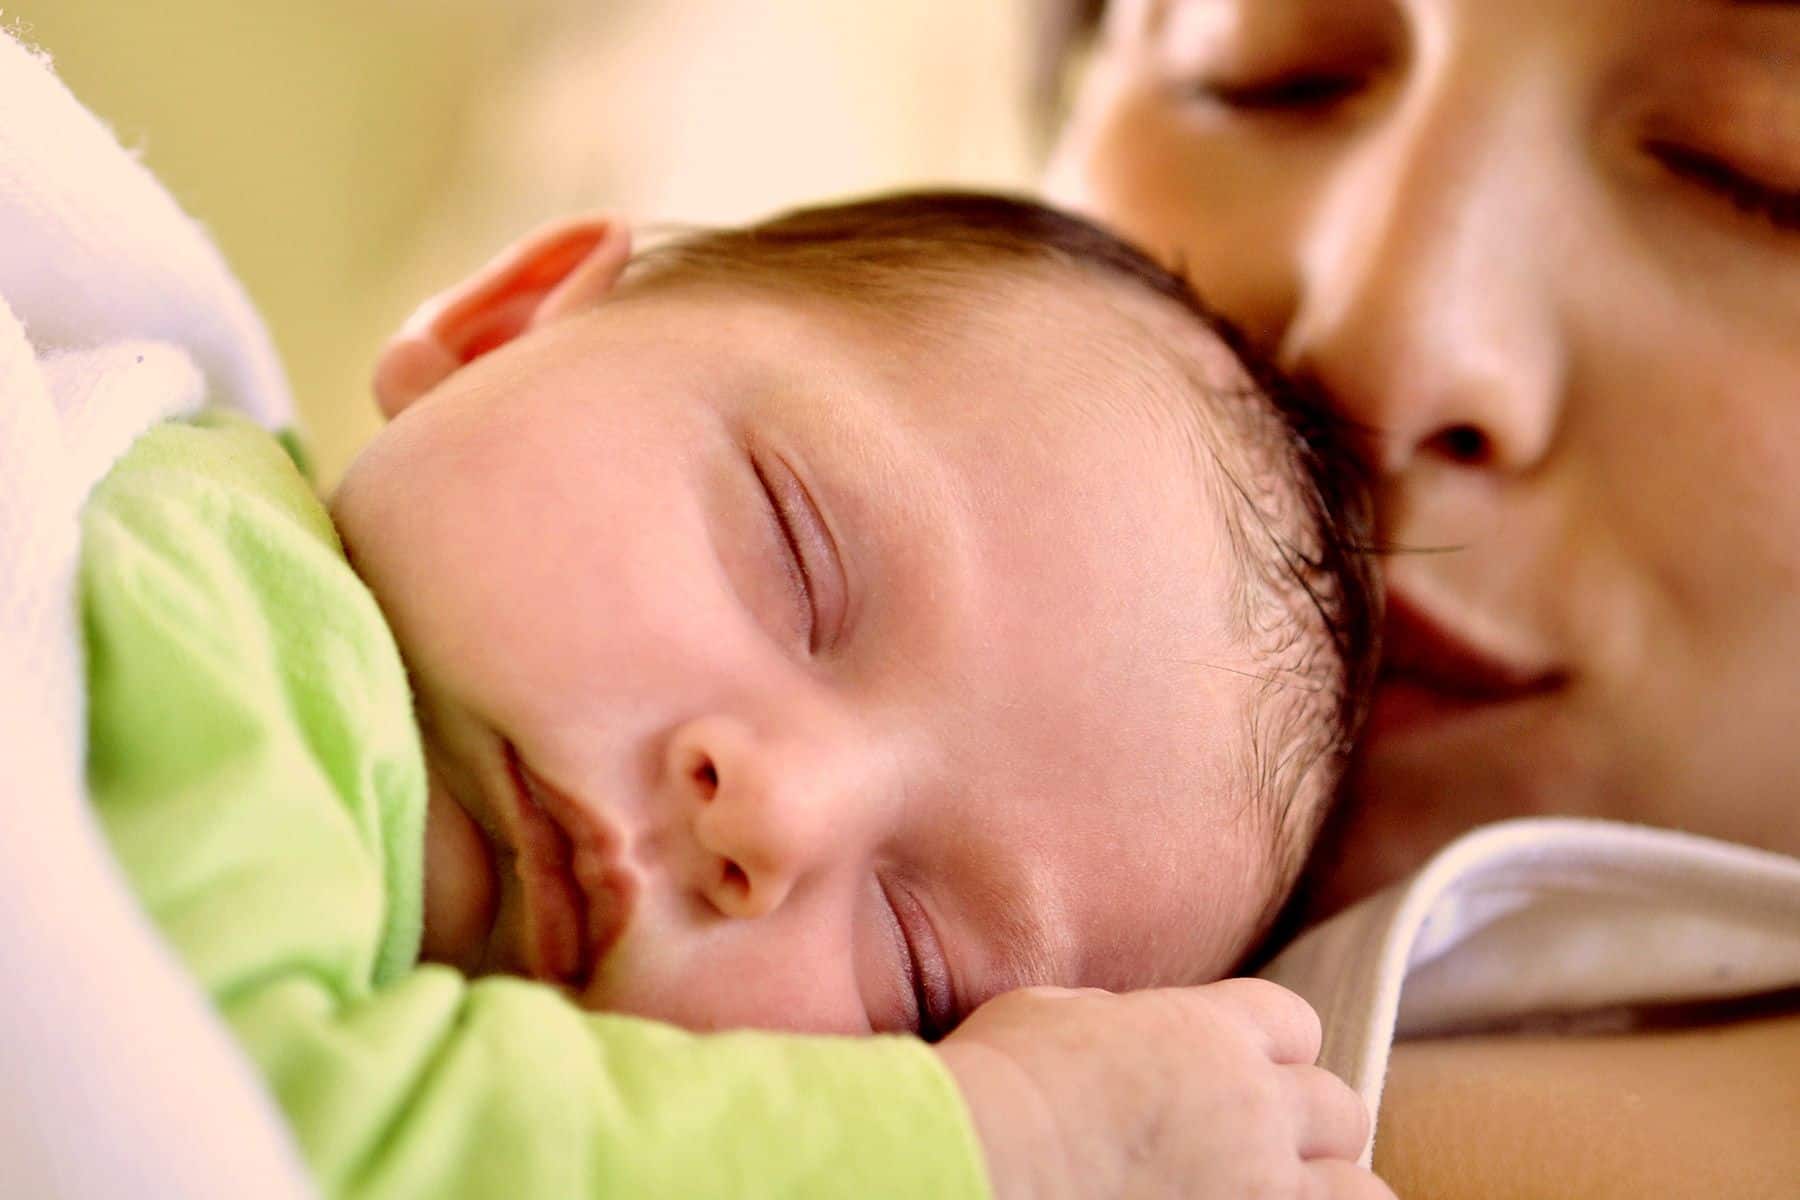 सुन्दर बच्चा पैदा करने के उपाय | बच्चा पैदा करने के लिए क्या करना चाहिए